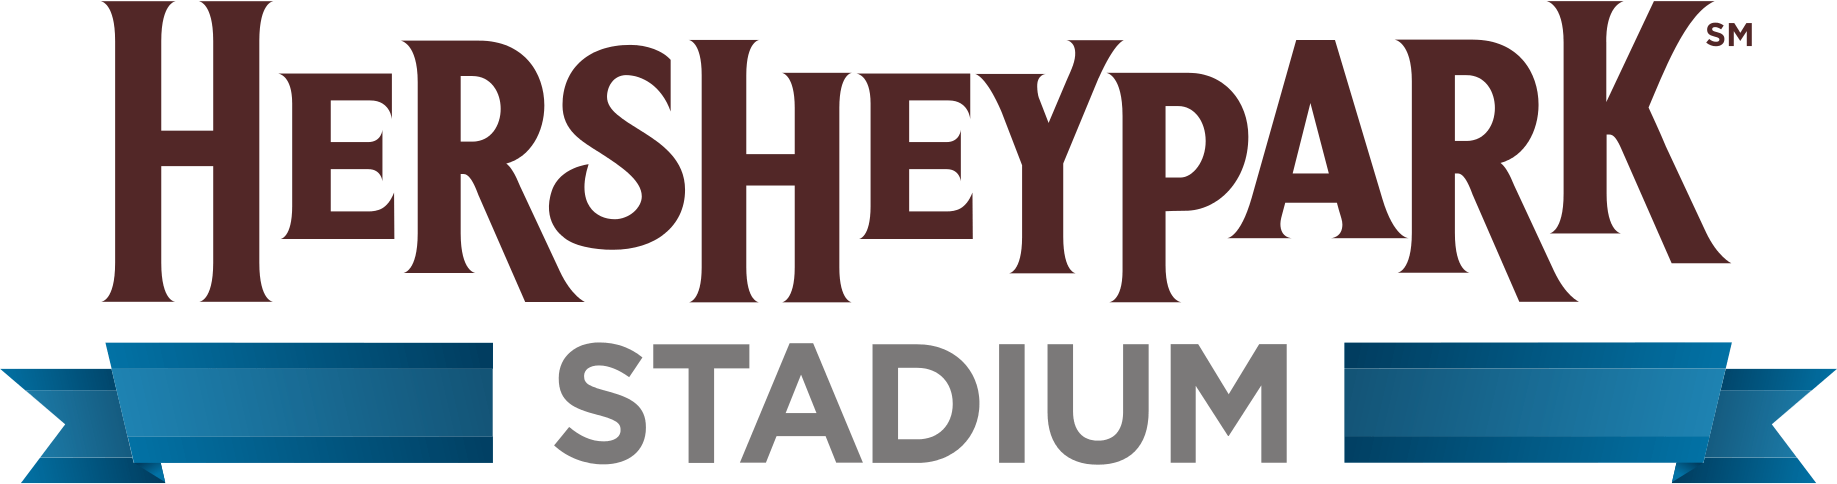 Hersheypark Logo - Hersheypark Stadium